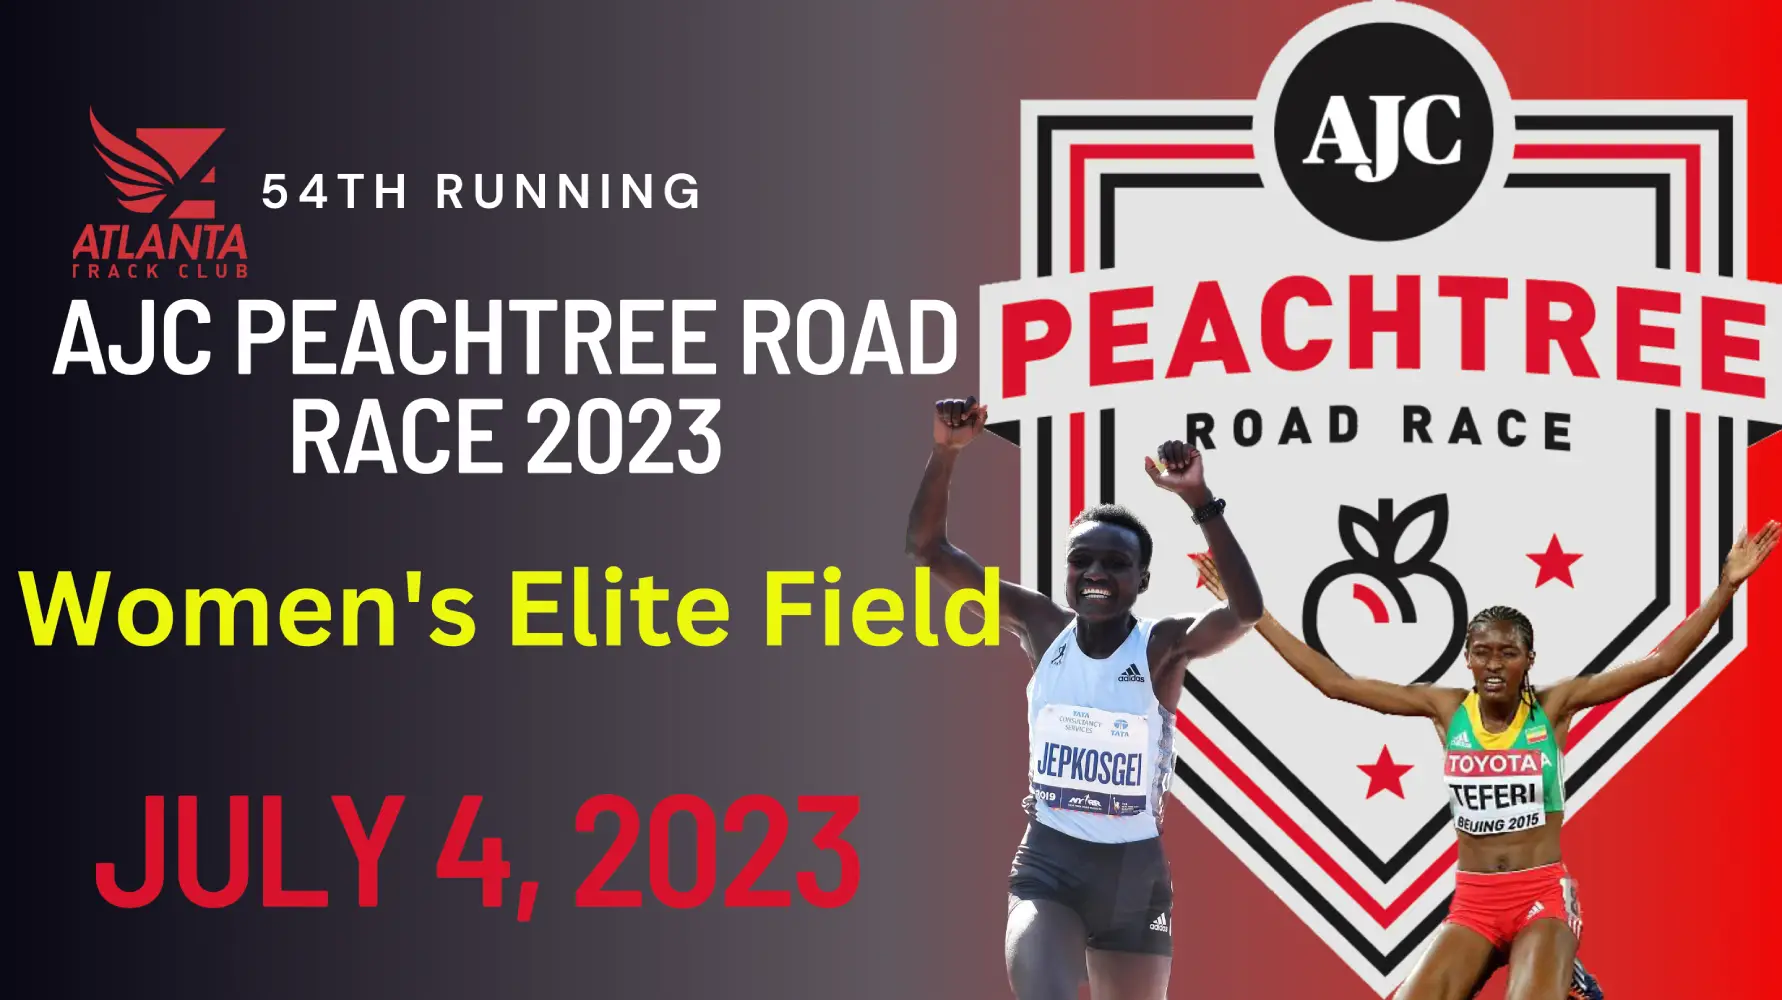 AJC Peachtree Road Race 2023 Women’s Elite Field